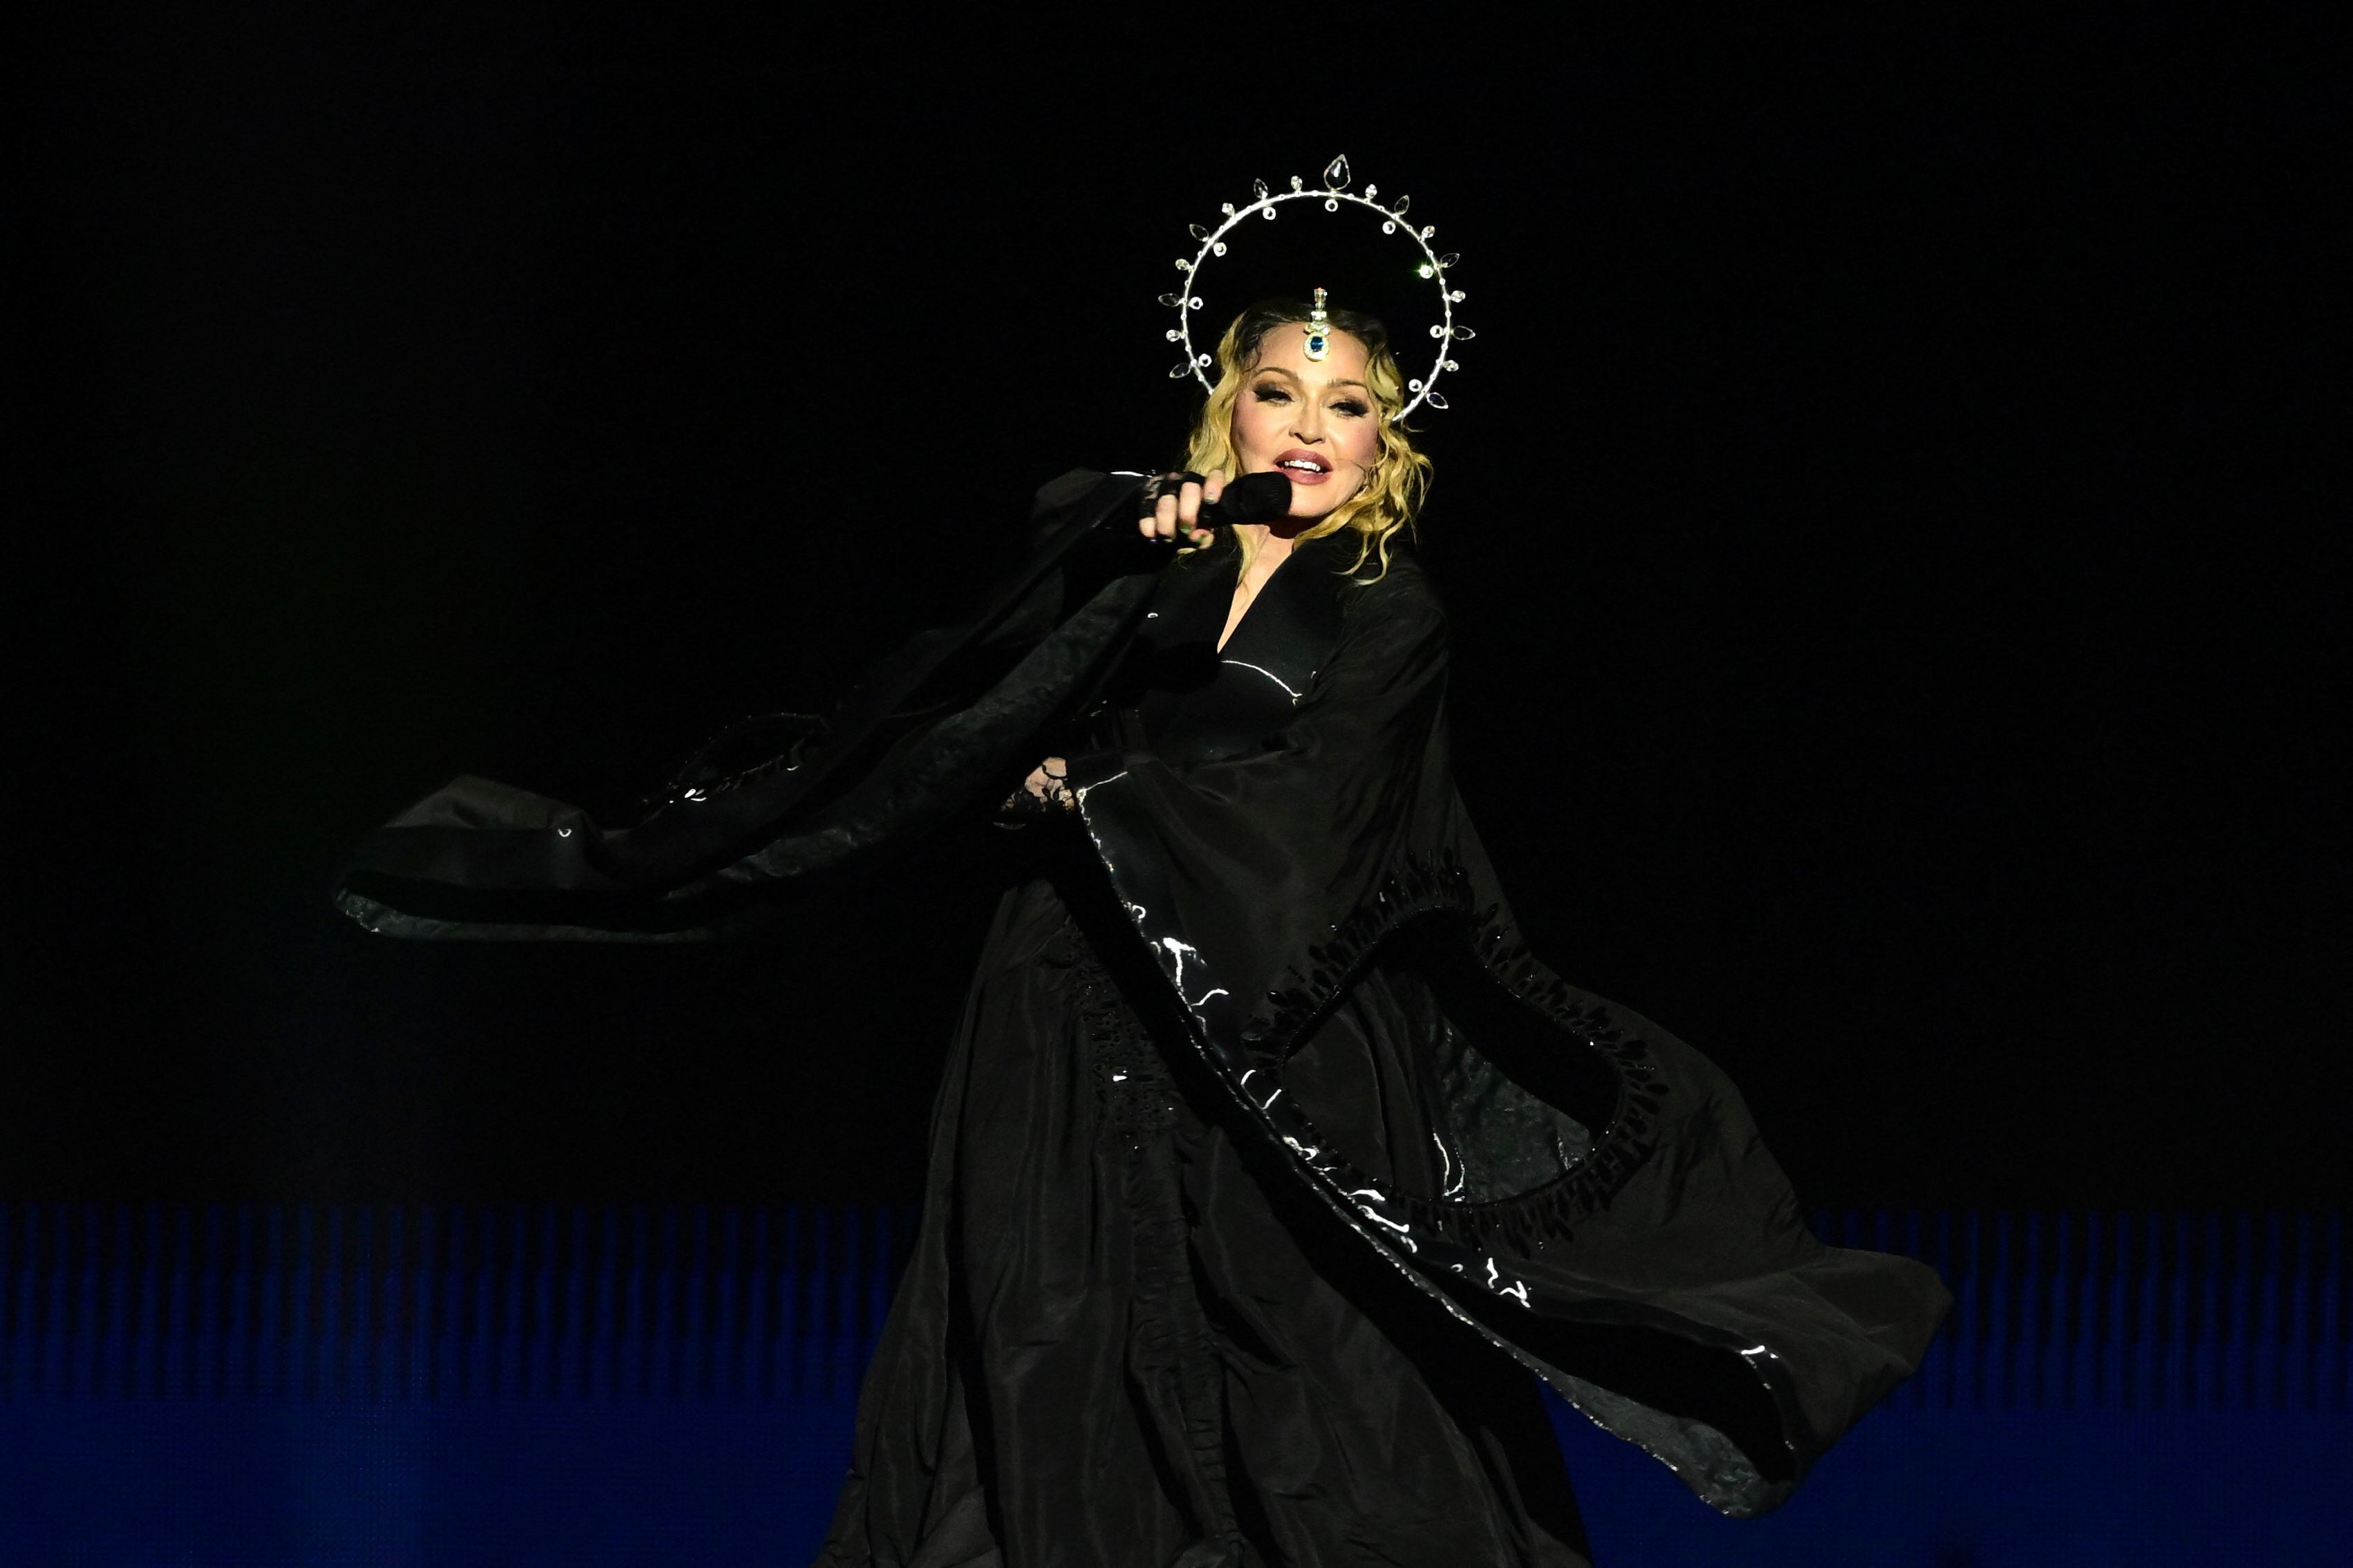 Madonna cerró su gira 'The Celebration Tour' el 4 de mayo. En ella repasó sus cuatro décadas conocida como la 